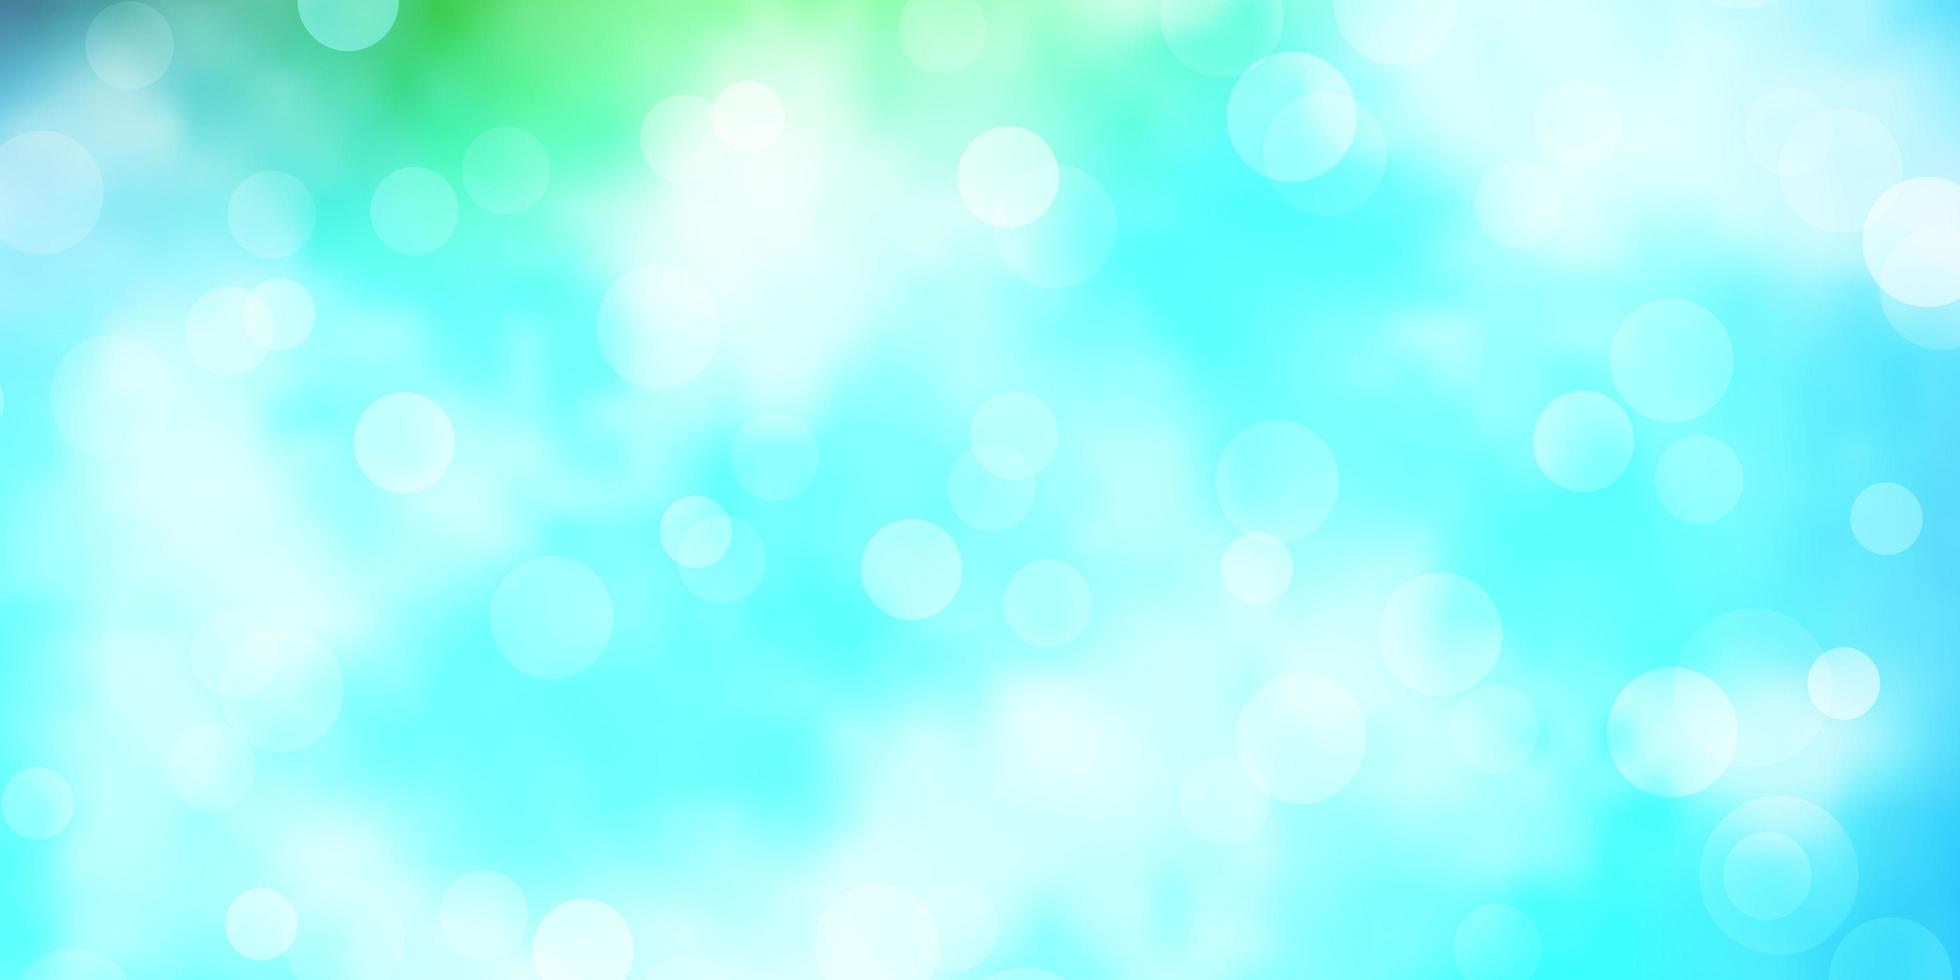 pano de fundo de vetor azul claro verde com design decorativo abstrato de pontos em estilo gradiente com padrão de bolhas para sites